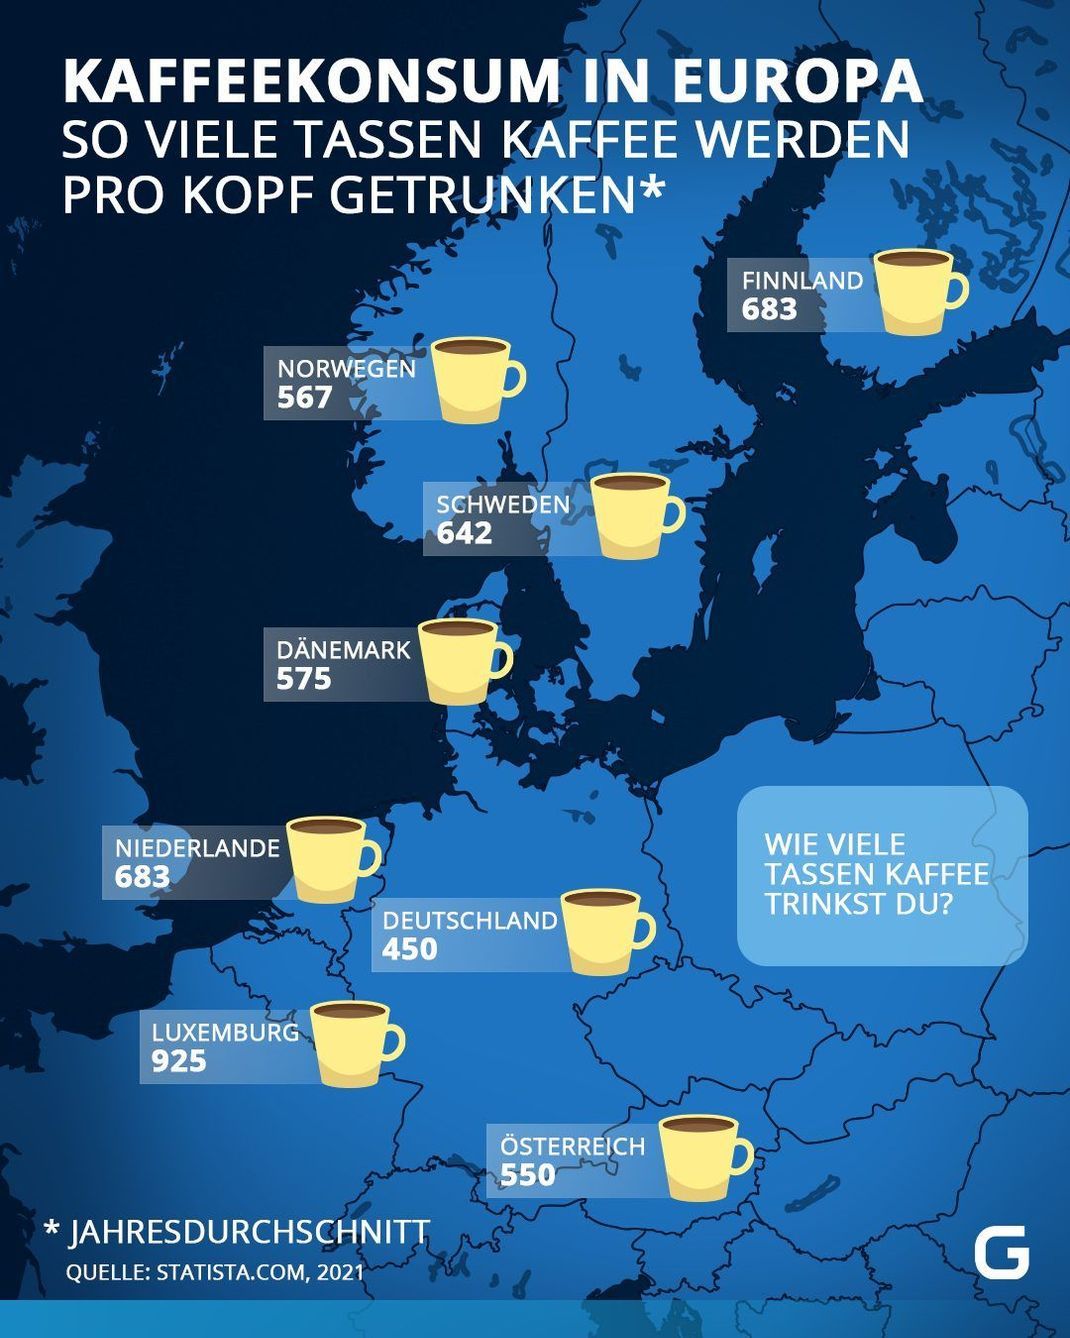 Kaffeekonsum in Europa: So viele Tassen Kaffee werden pro Kopf getrunken